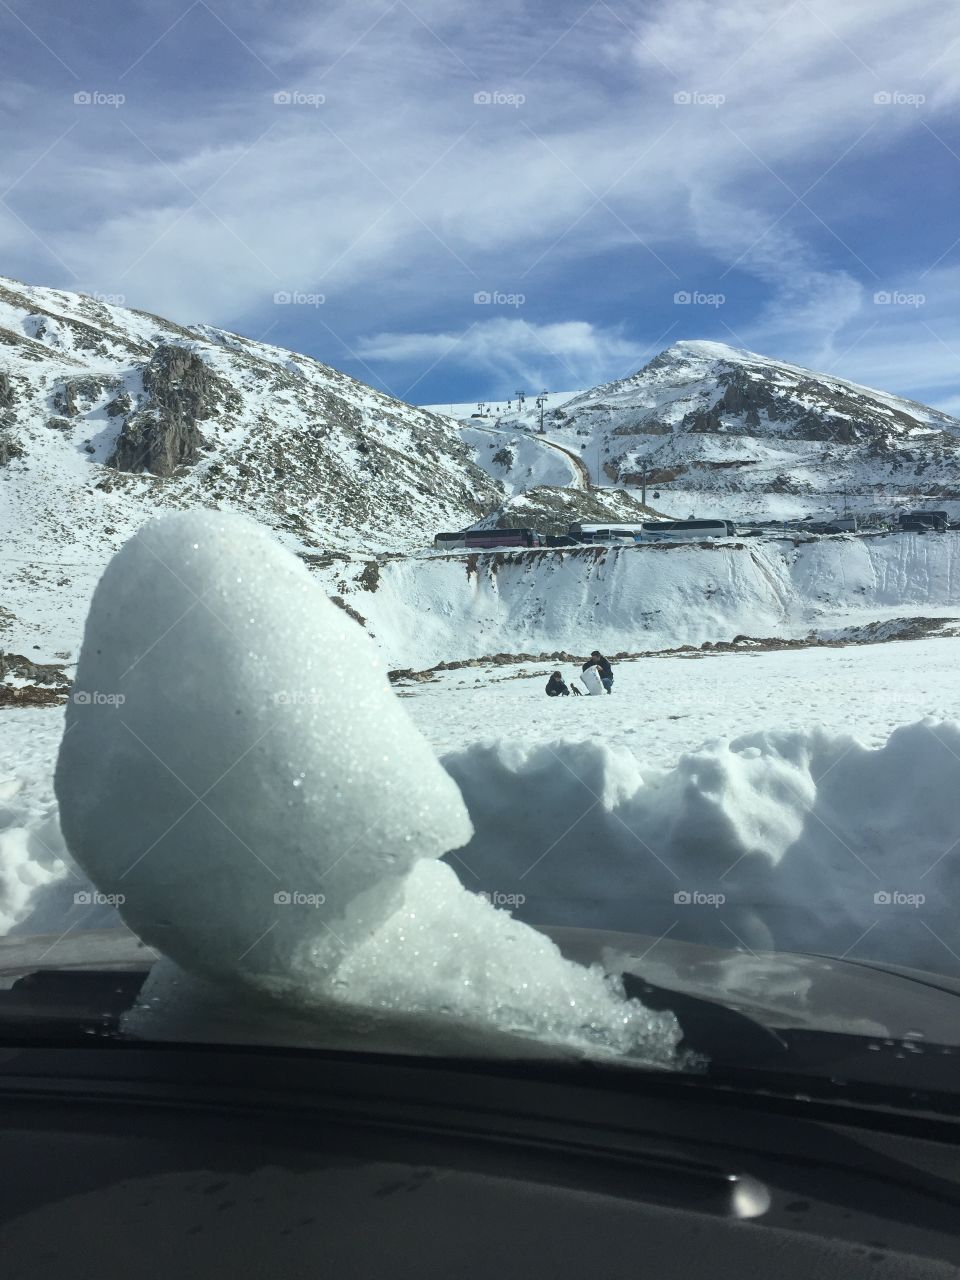 A snowman in a car